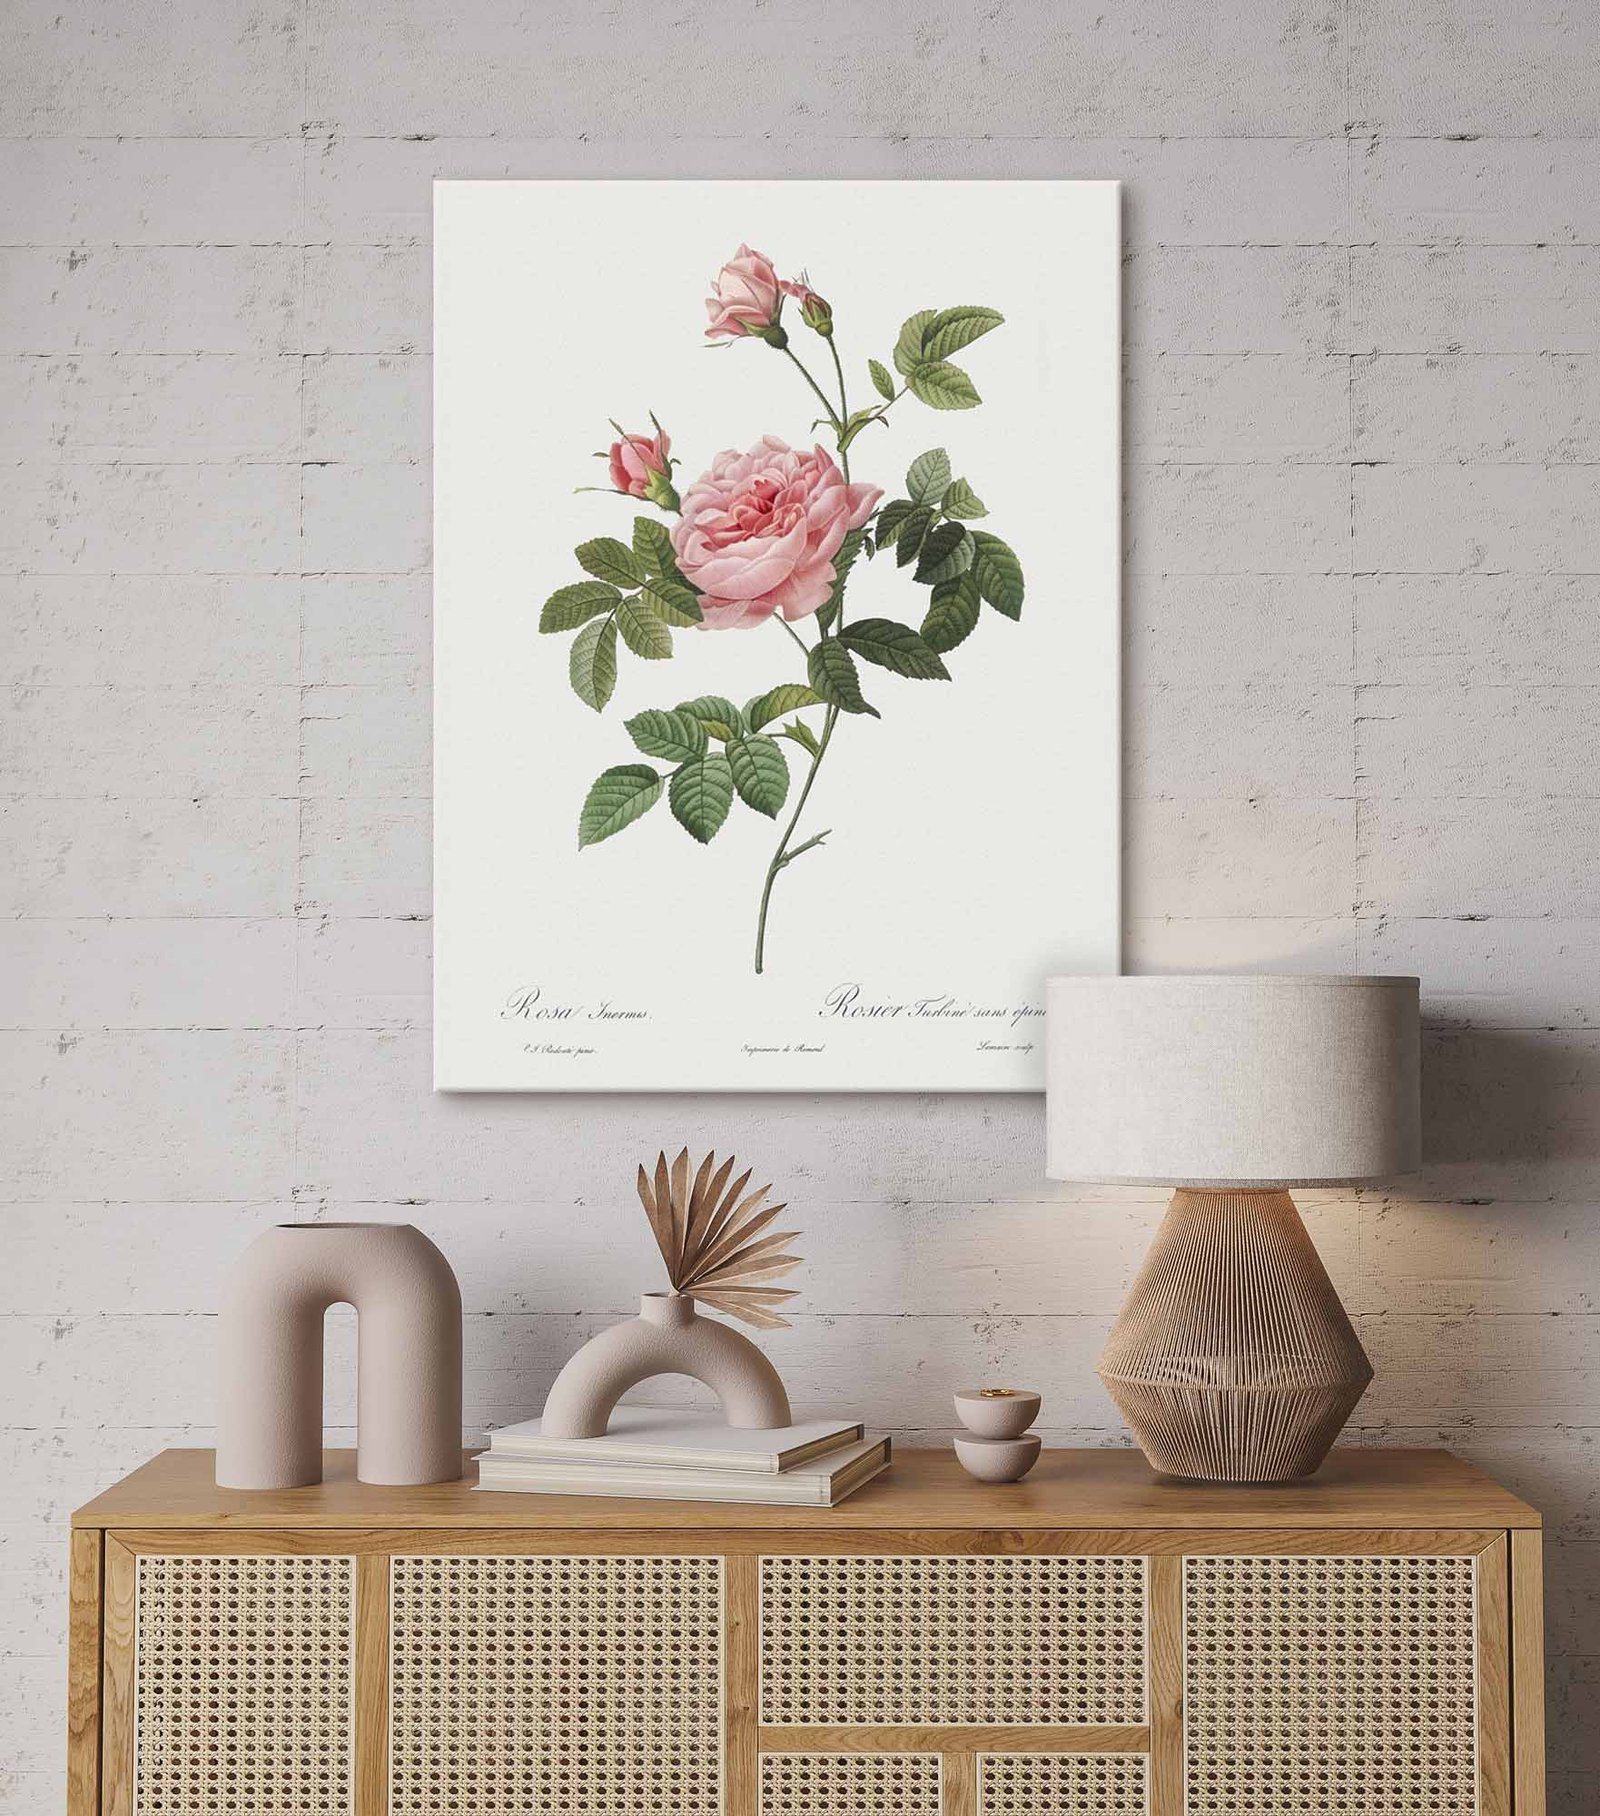 63 paveikslas ant drobes svetaineje - Burso rožė - Pierre-Joseph Redouté